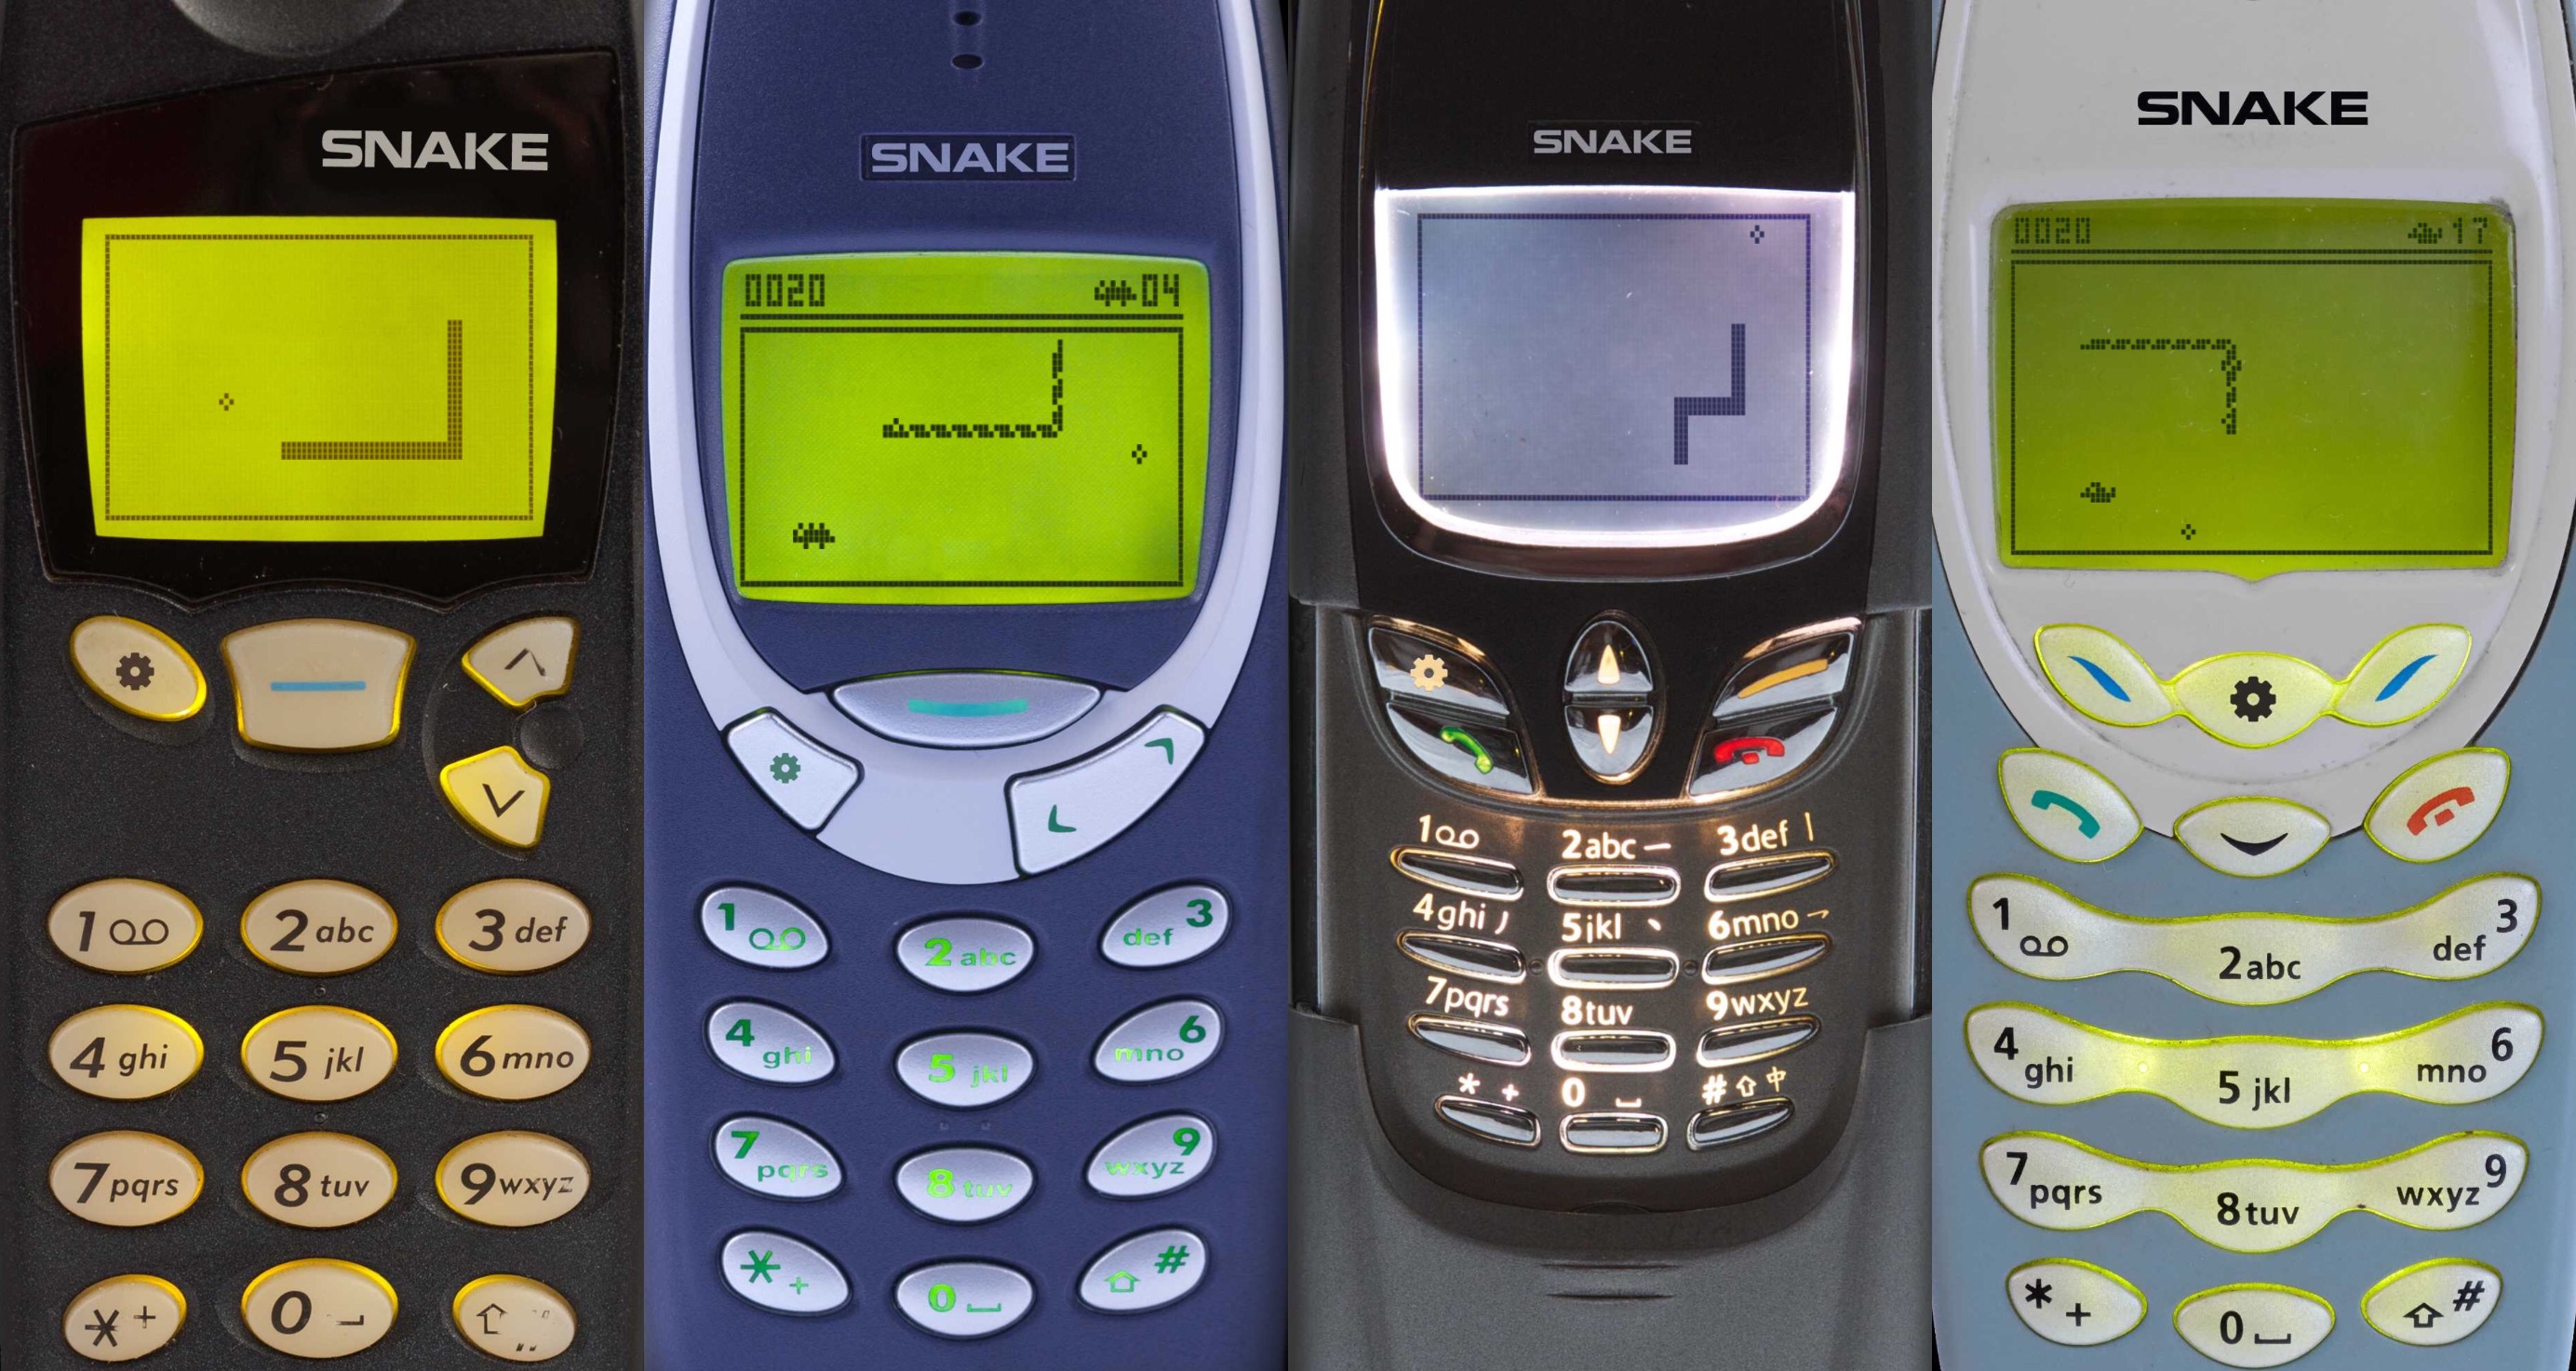 Snake' 97 enfia litros de nostalgia na tela de seu smartphone